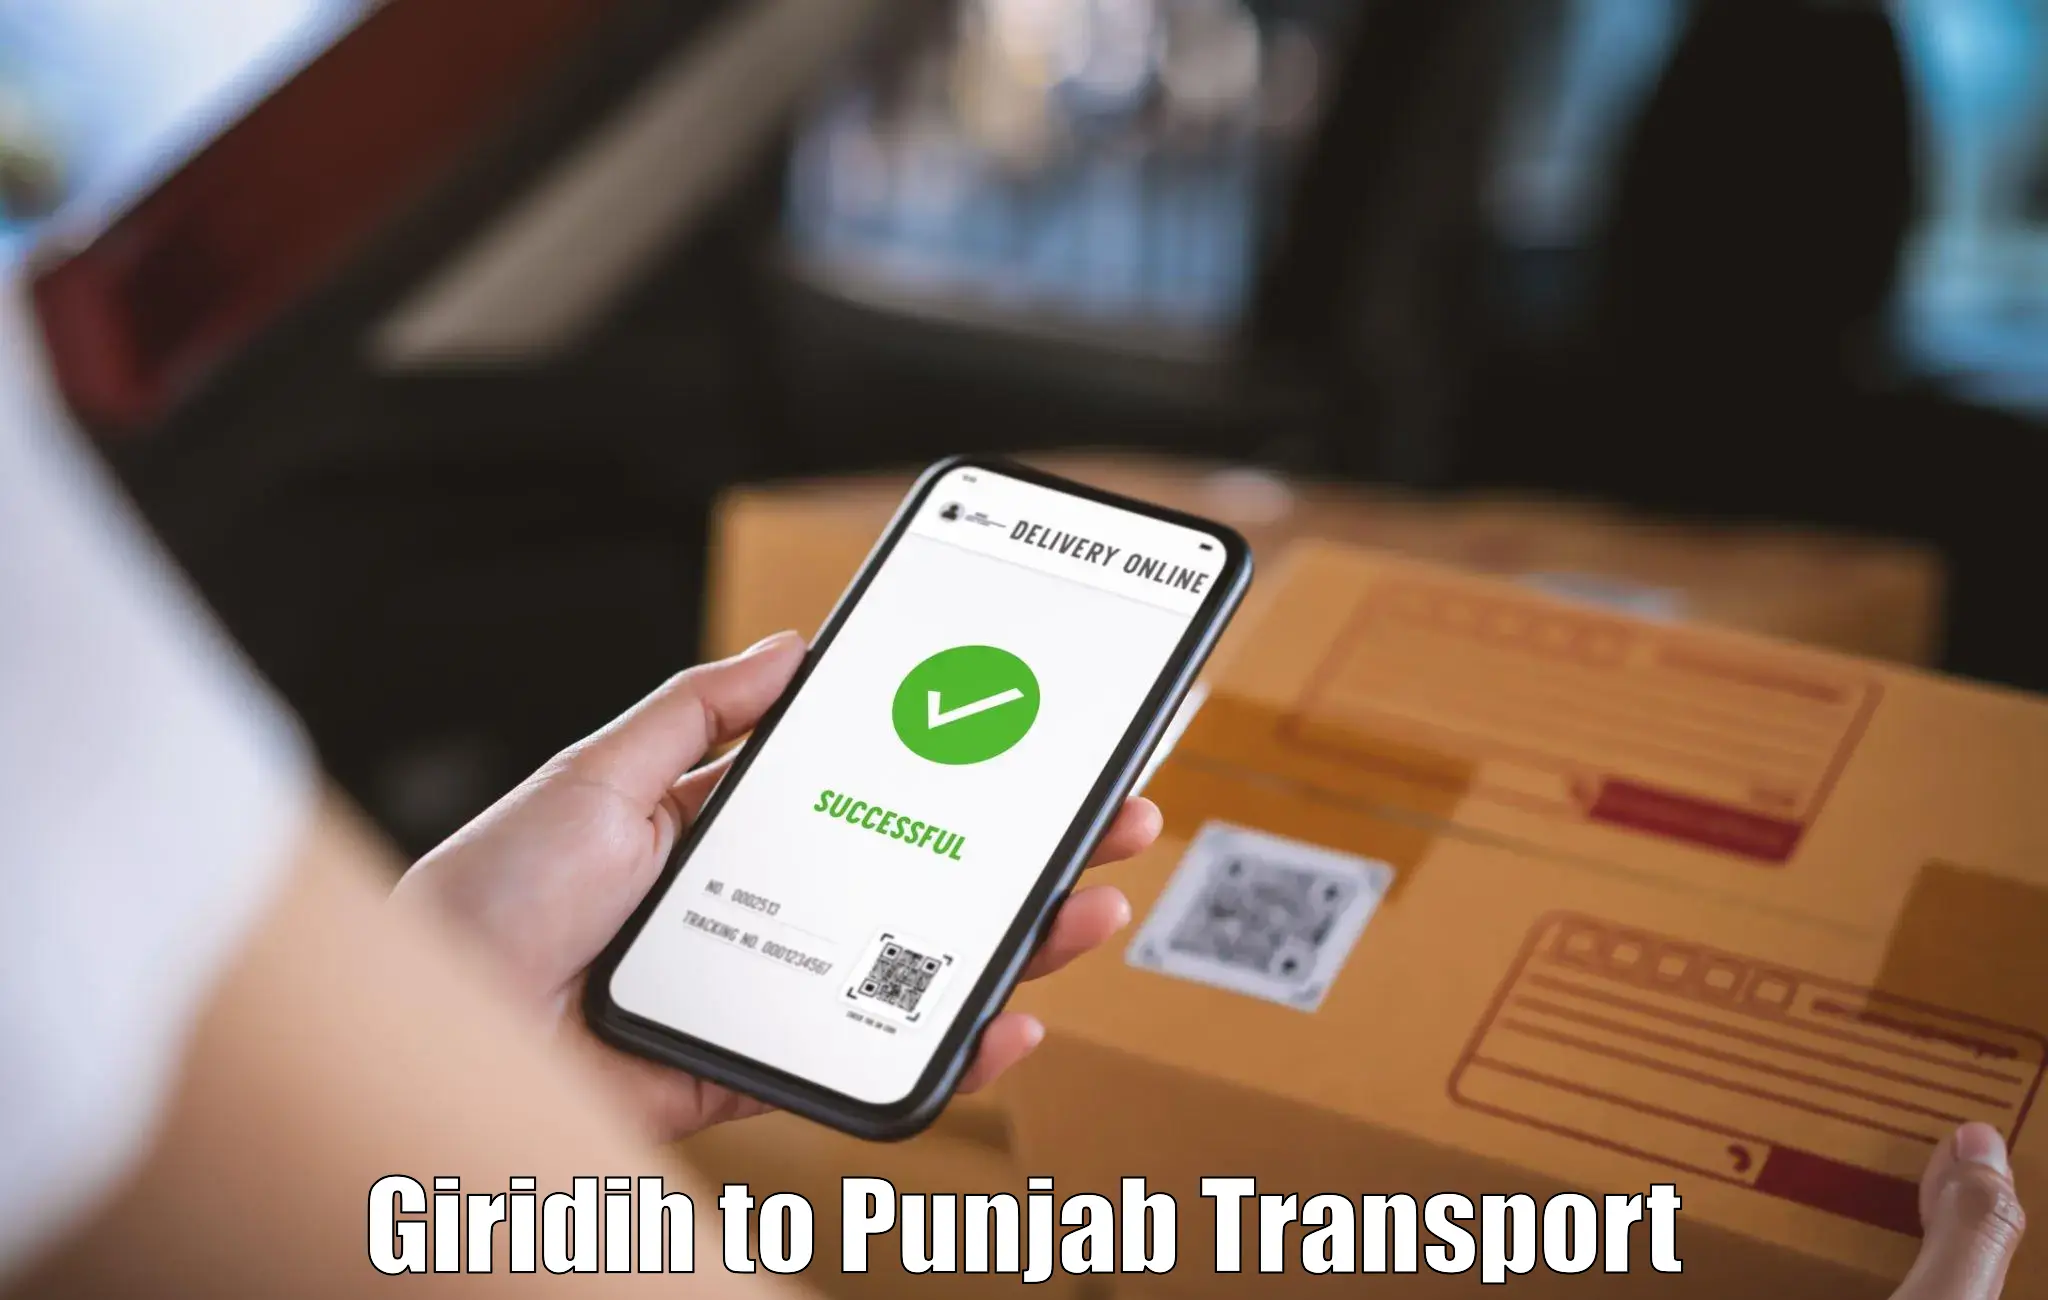 Express transport services Giridih to Rupnagar